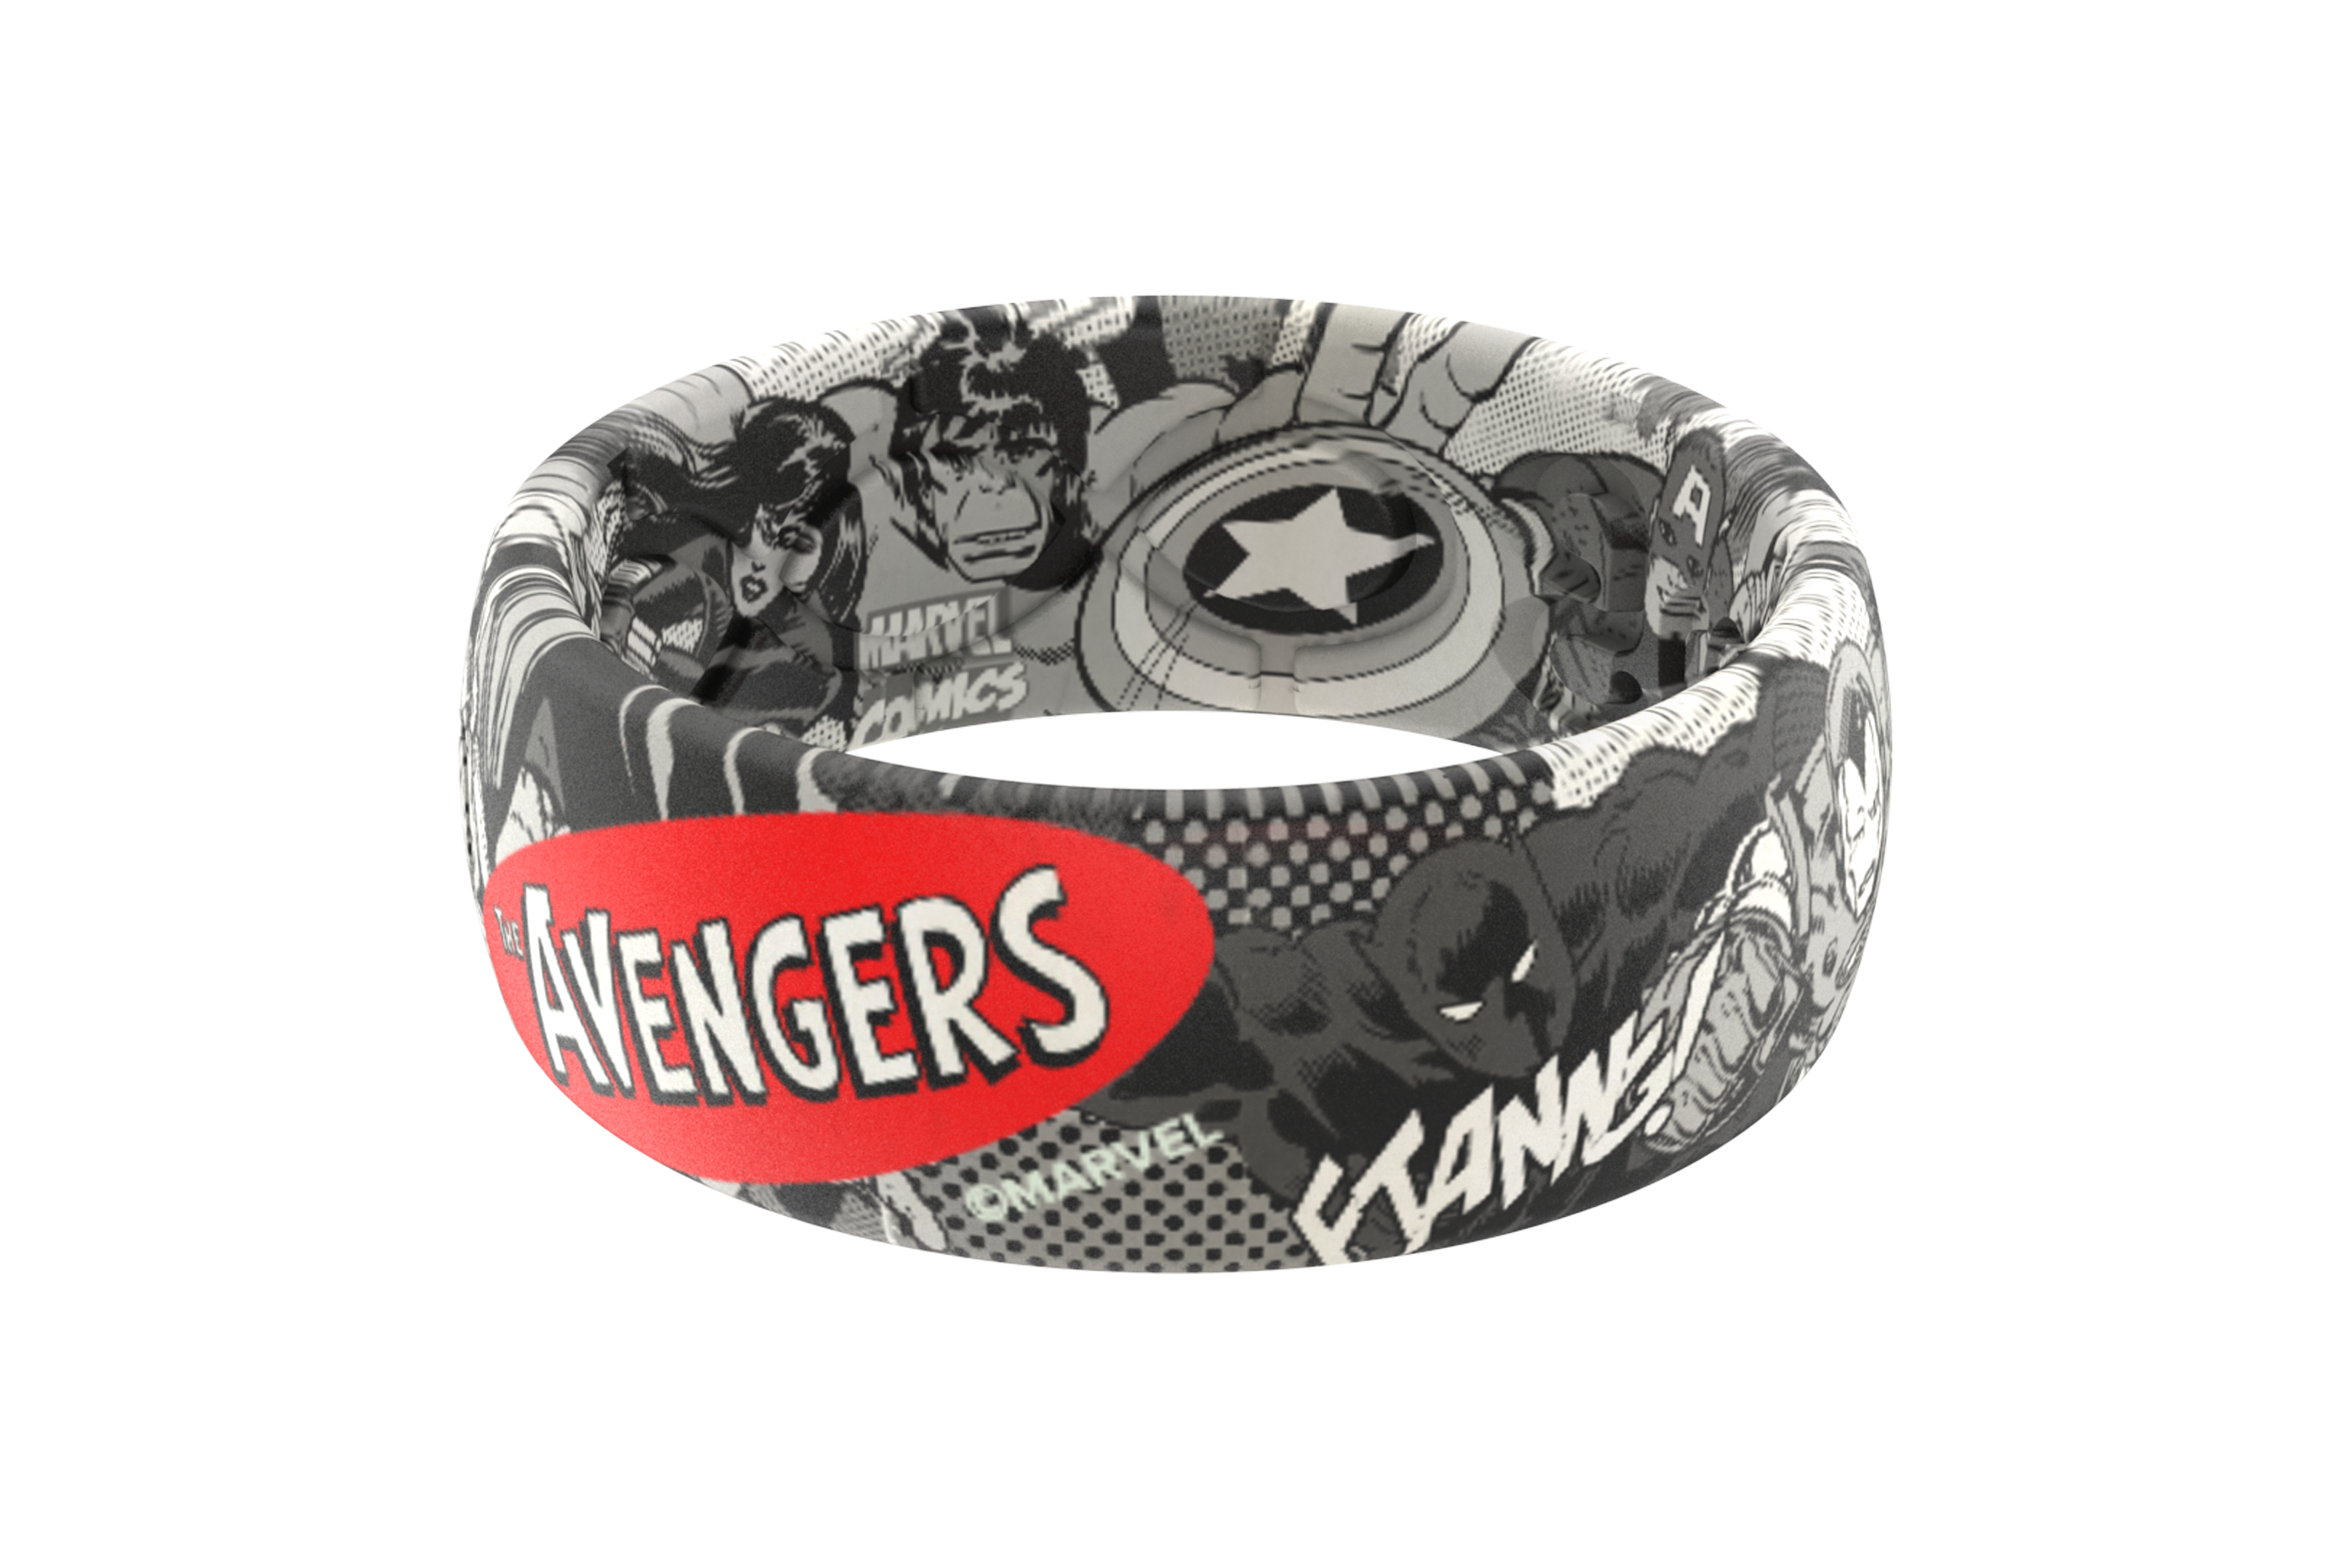 Avengers Black and White Comic Ring Marvel - Avengers Groove Life 